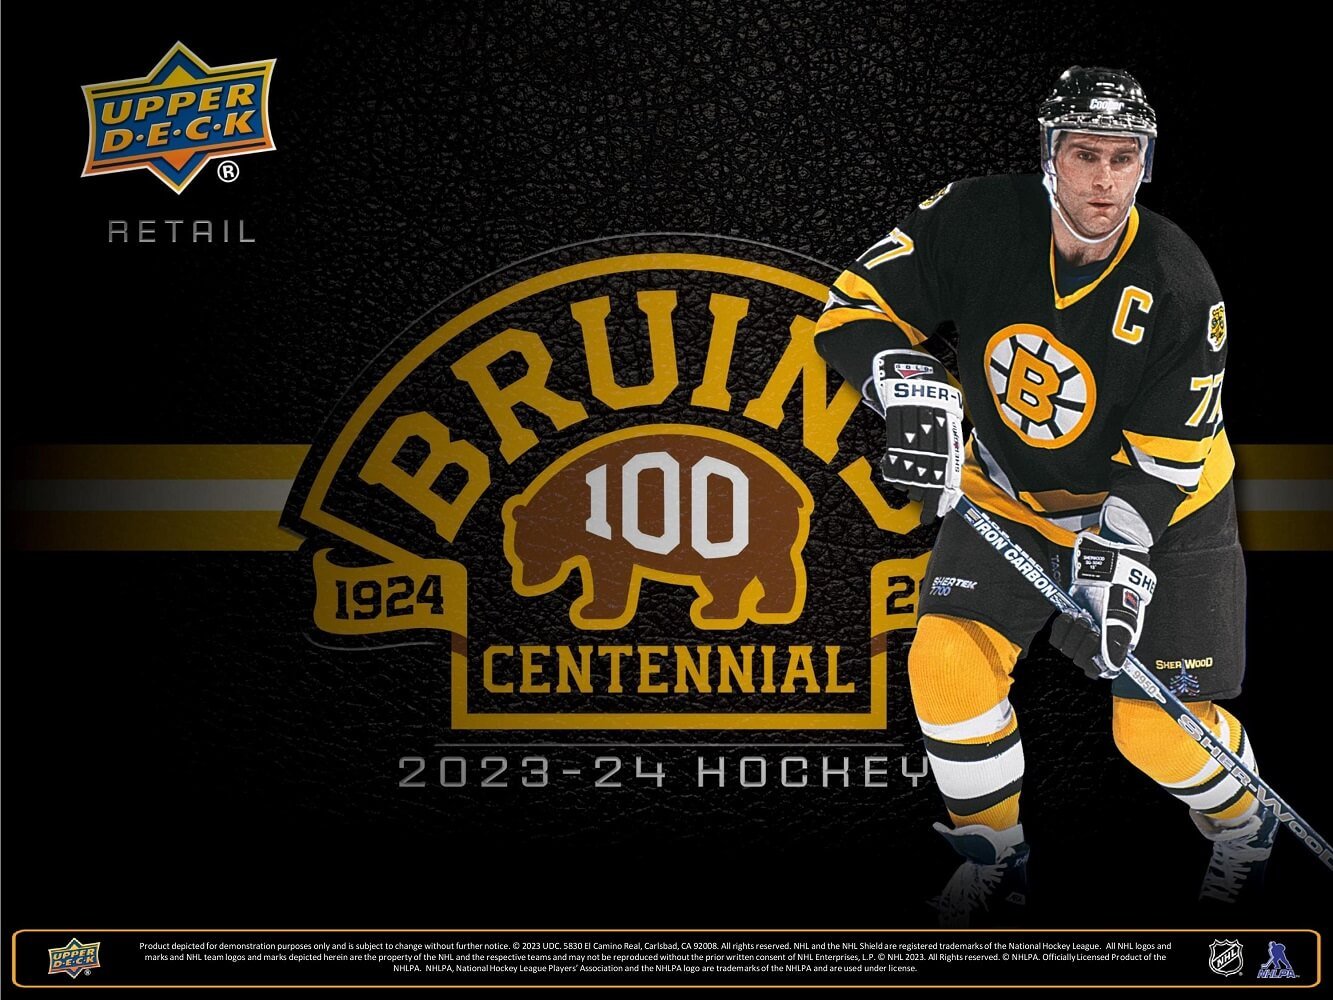 2023-24 Upper Deck Boston Bruins Centennial Hockey Box Set